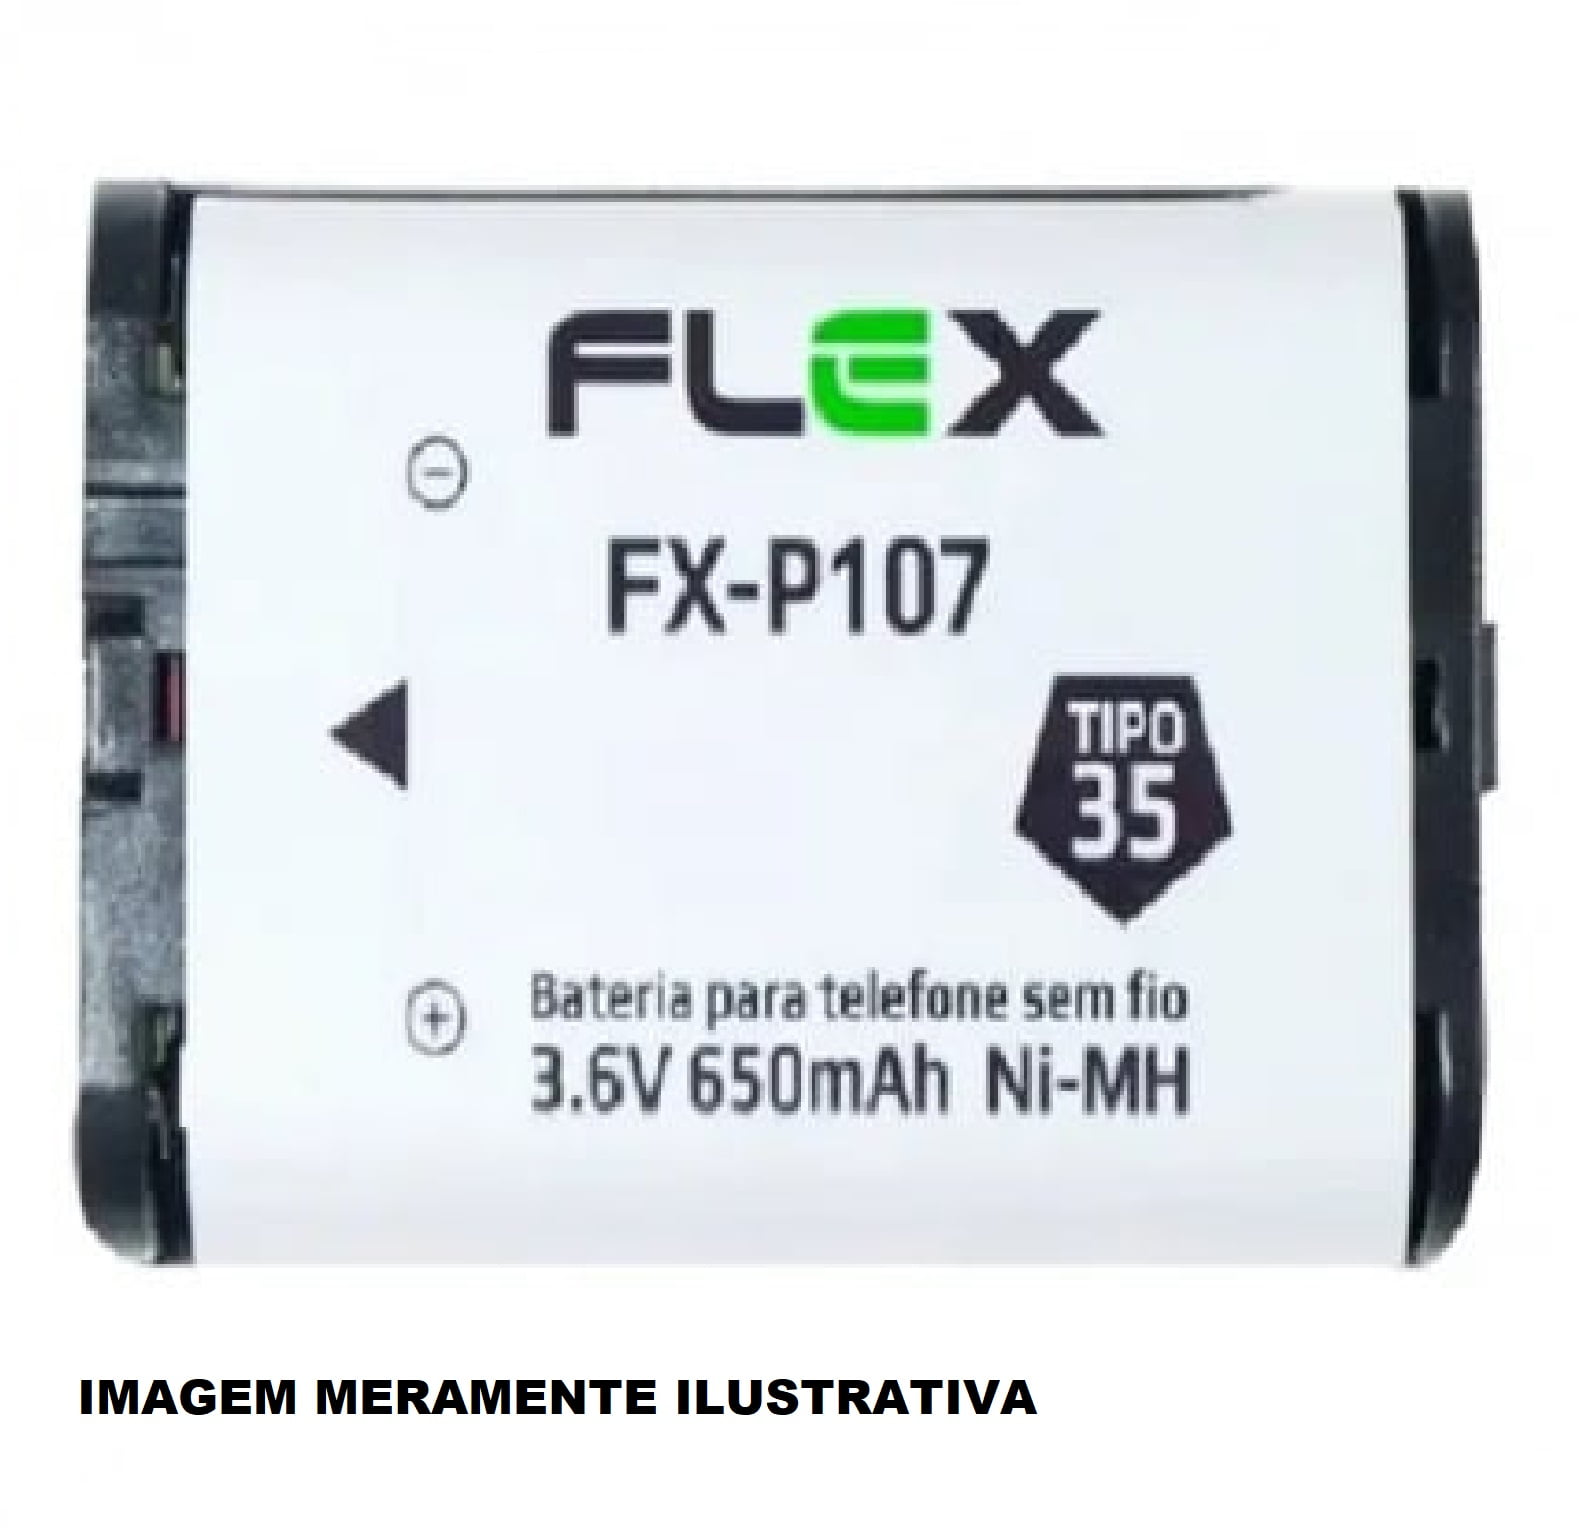 BATERIA TELEFONE SEM FIO TIPO 35 3.6V 650MAH - FX-P107 - FLEX